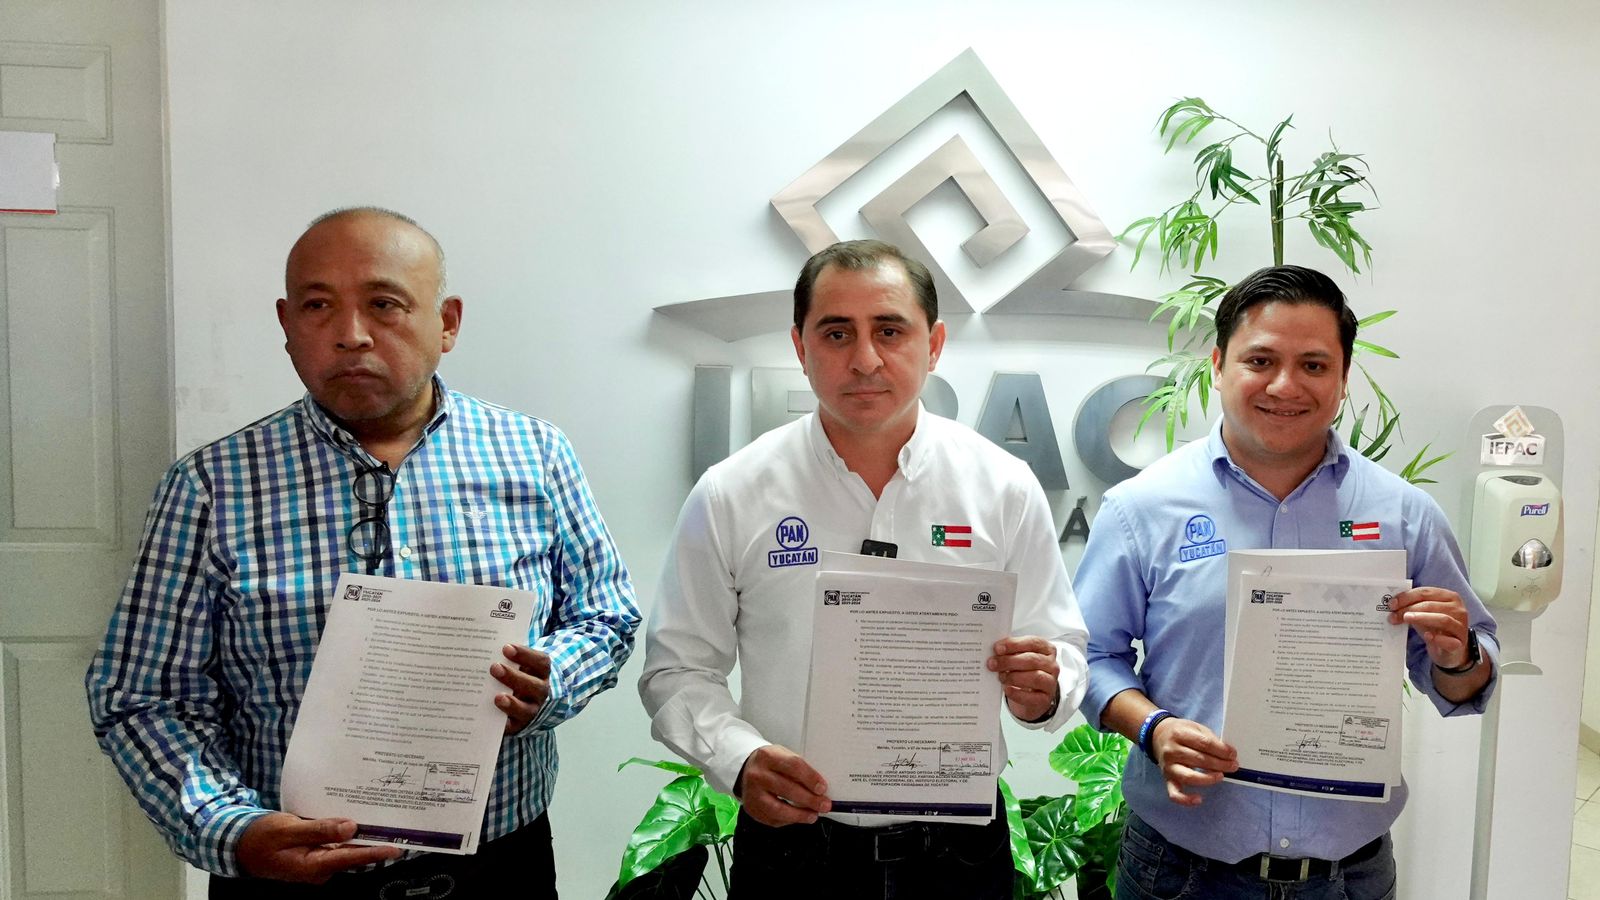 El PAN Yucatán denuncia a morena por presiones ilegales al voto